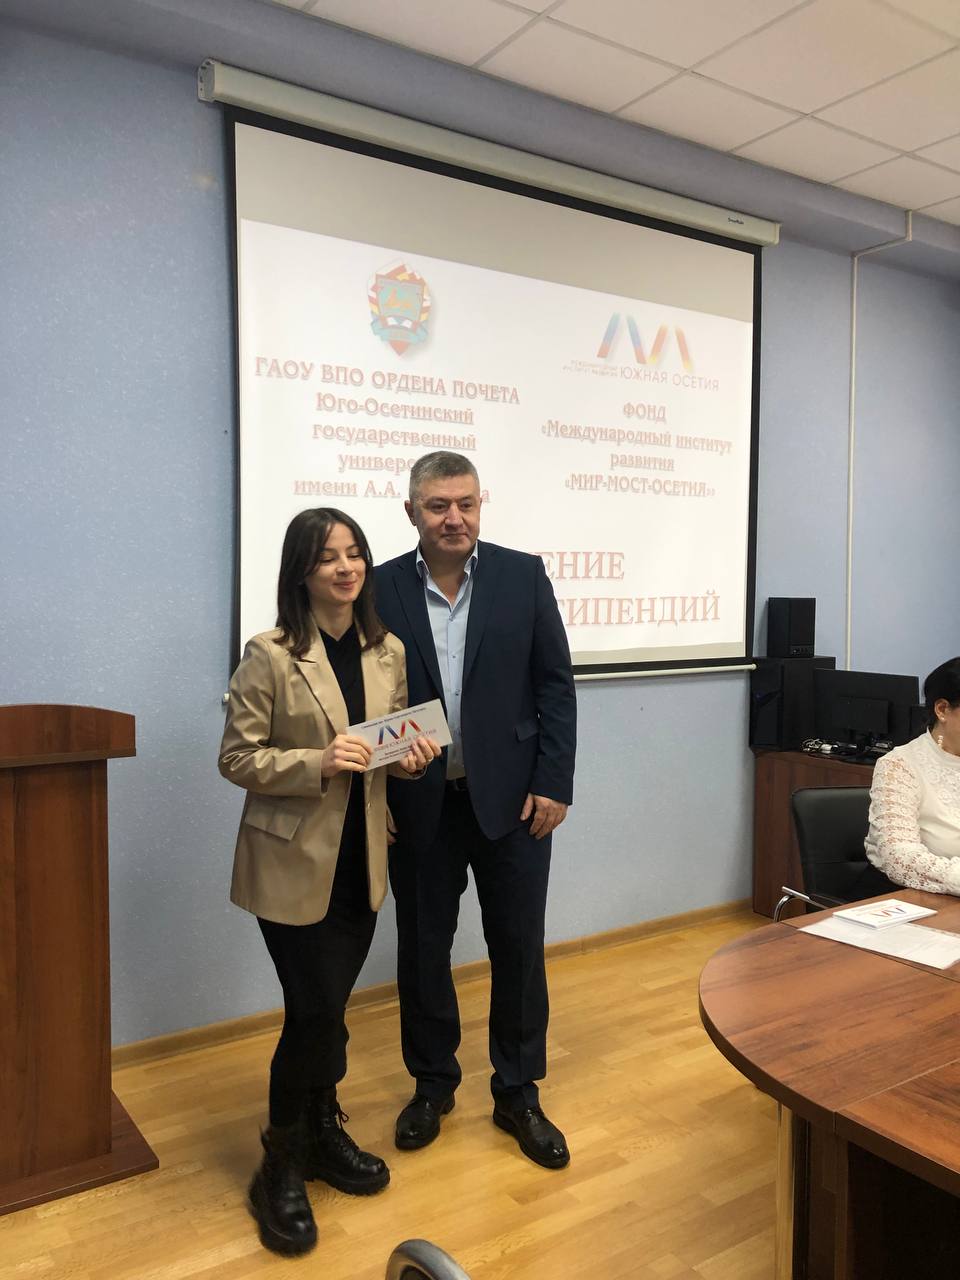 НИИРК – В Юго-Осетинском государственном университете состоялось вручение именных стипендий Фонда «МИР – МОСТ – ОСЕТИЯ»